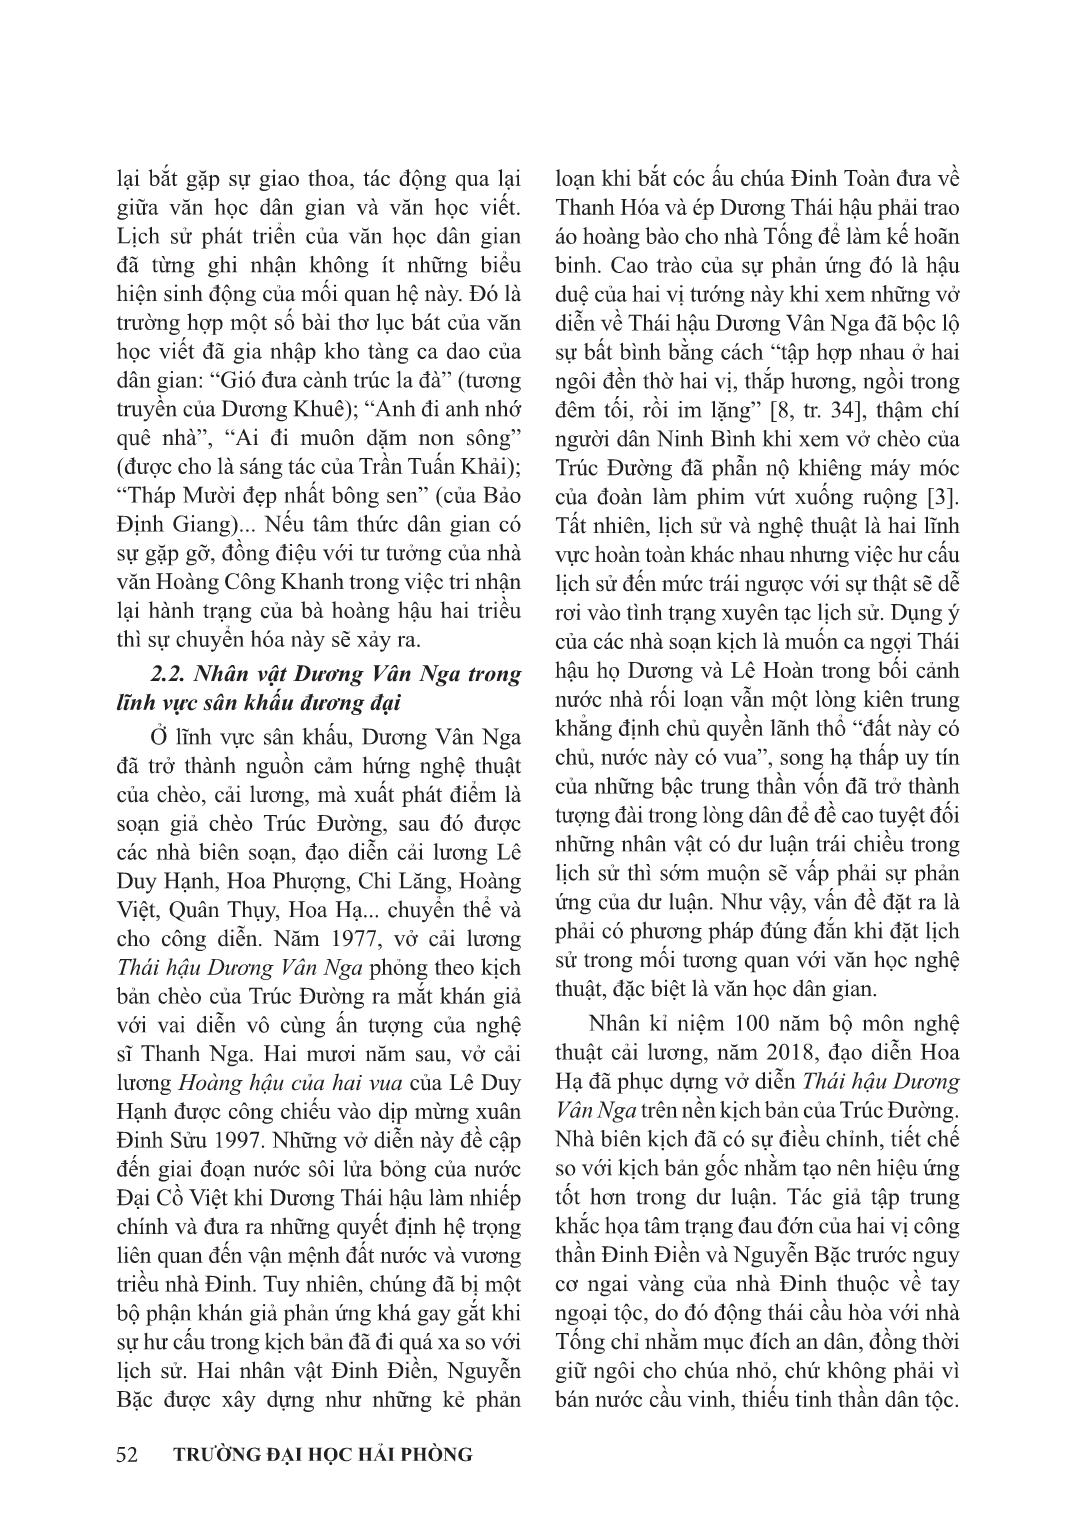 Nhân vật Dương Vân Na trong văn học nghệ thuật đương đại trang 5